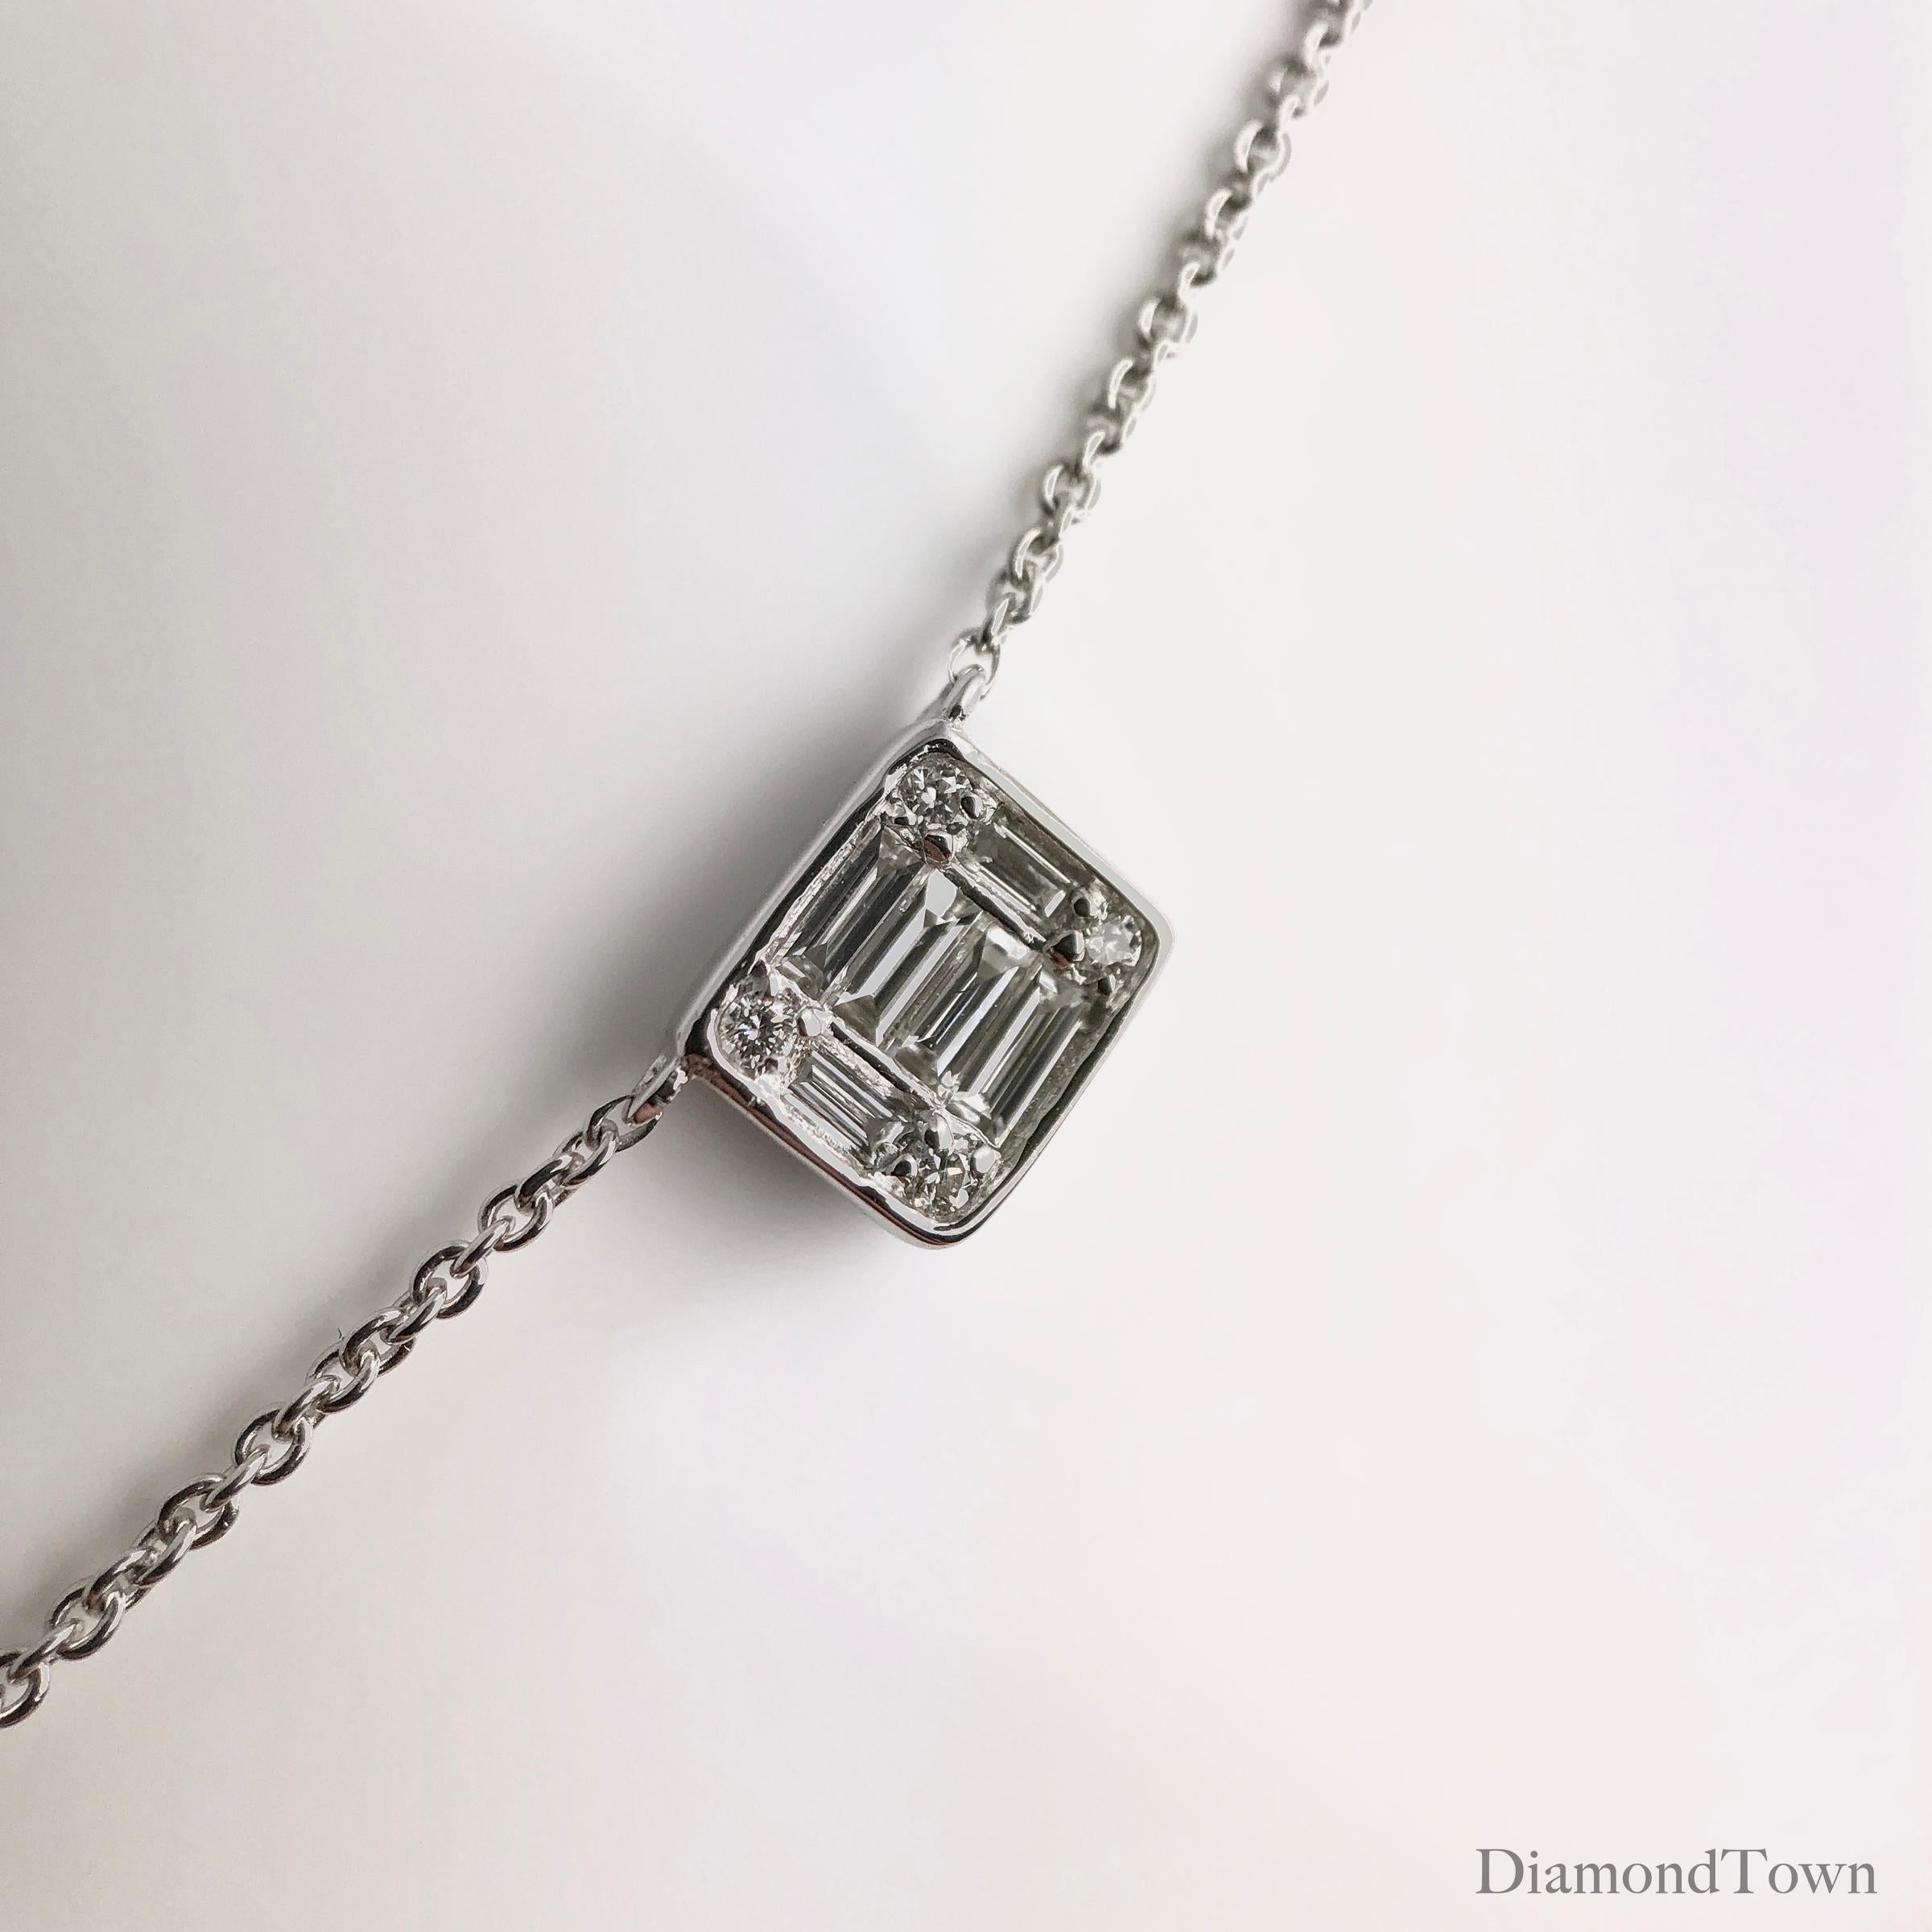 Unsere exquisite Diamant-Cluster-Halskette ist ein wahres Zeugnis für Raffinesse und Anmut. Diese atemberaubende Halskette wurde mit viel Liebe zum Detail gefertigt und verfügt über fünf schillernde Diamant-Cluster, die jeweils mit einer Kombination